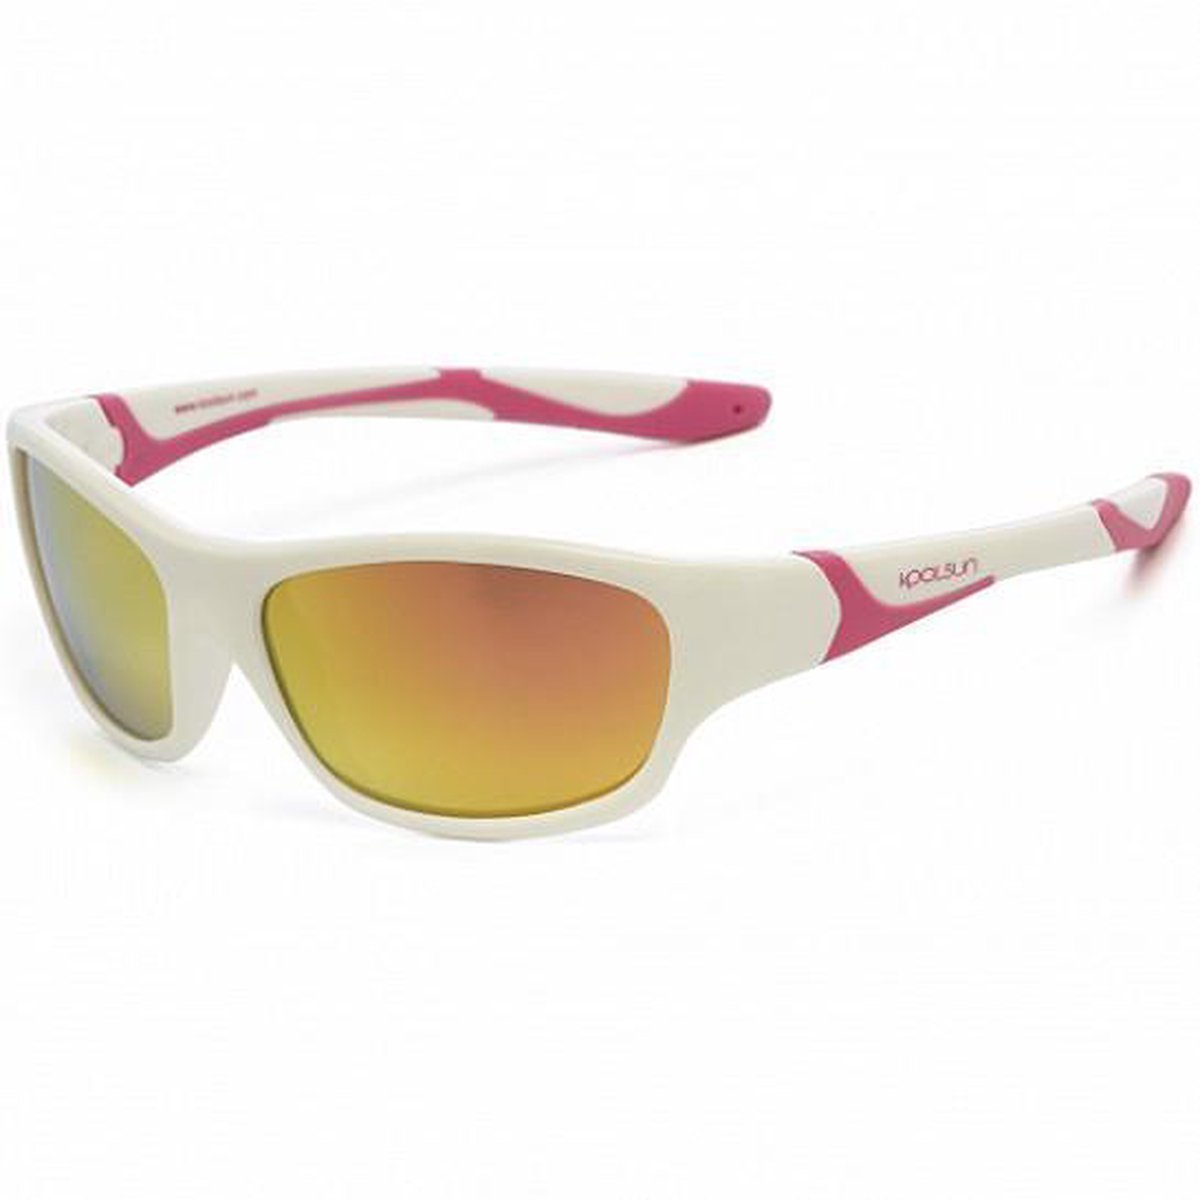 KOOLSUN - Sport - Kinder zonnebril - White Hot Pink - 3-8 jaar - UV400 - Categorie 3